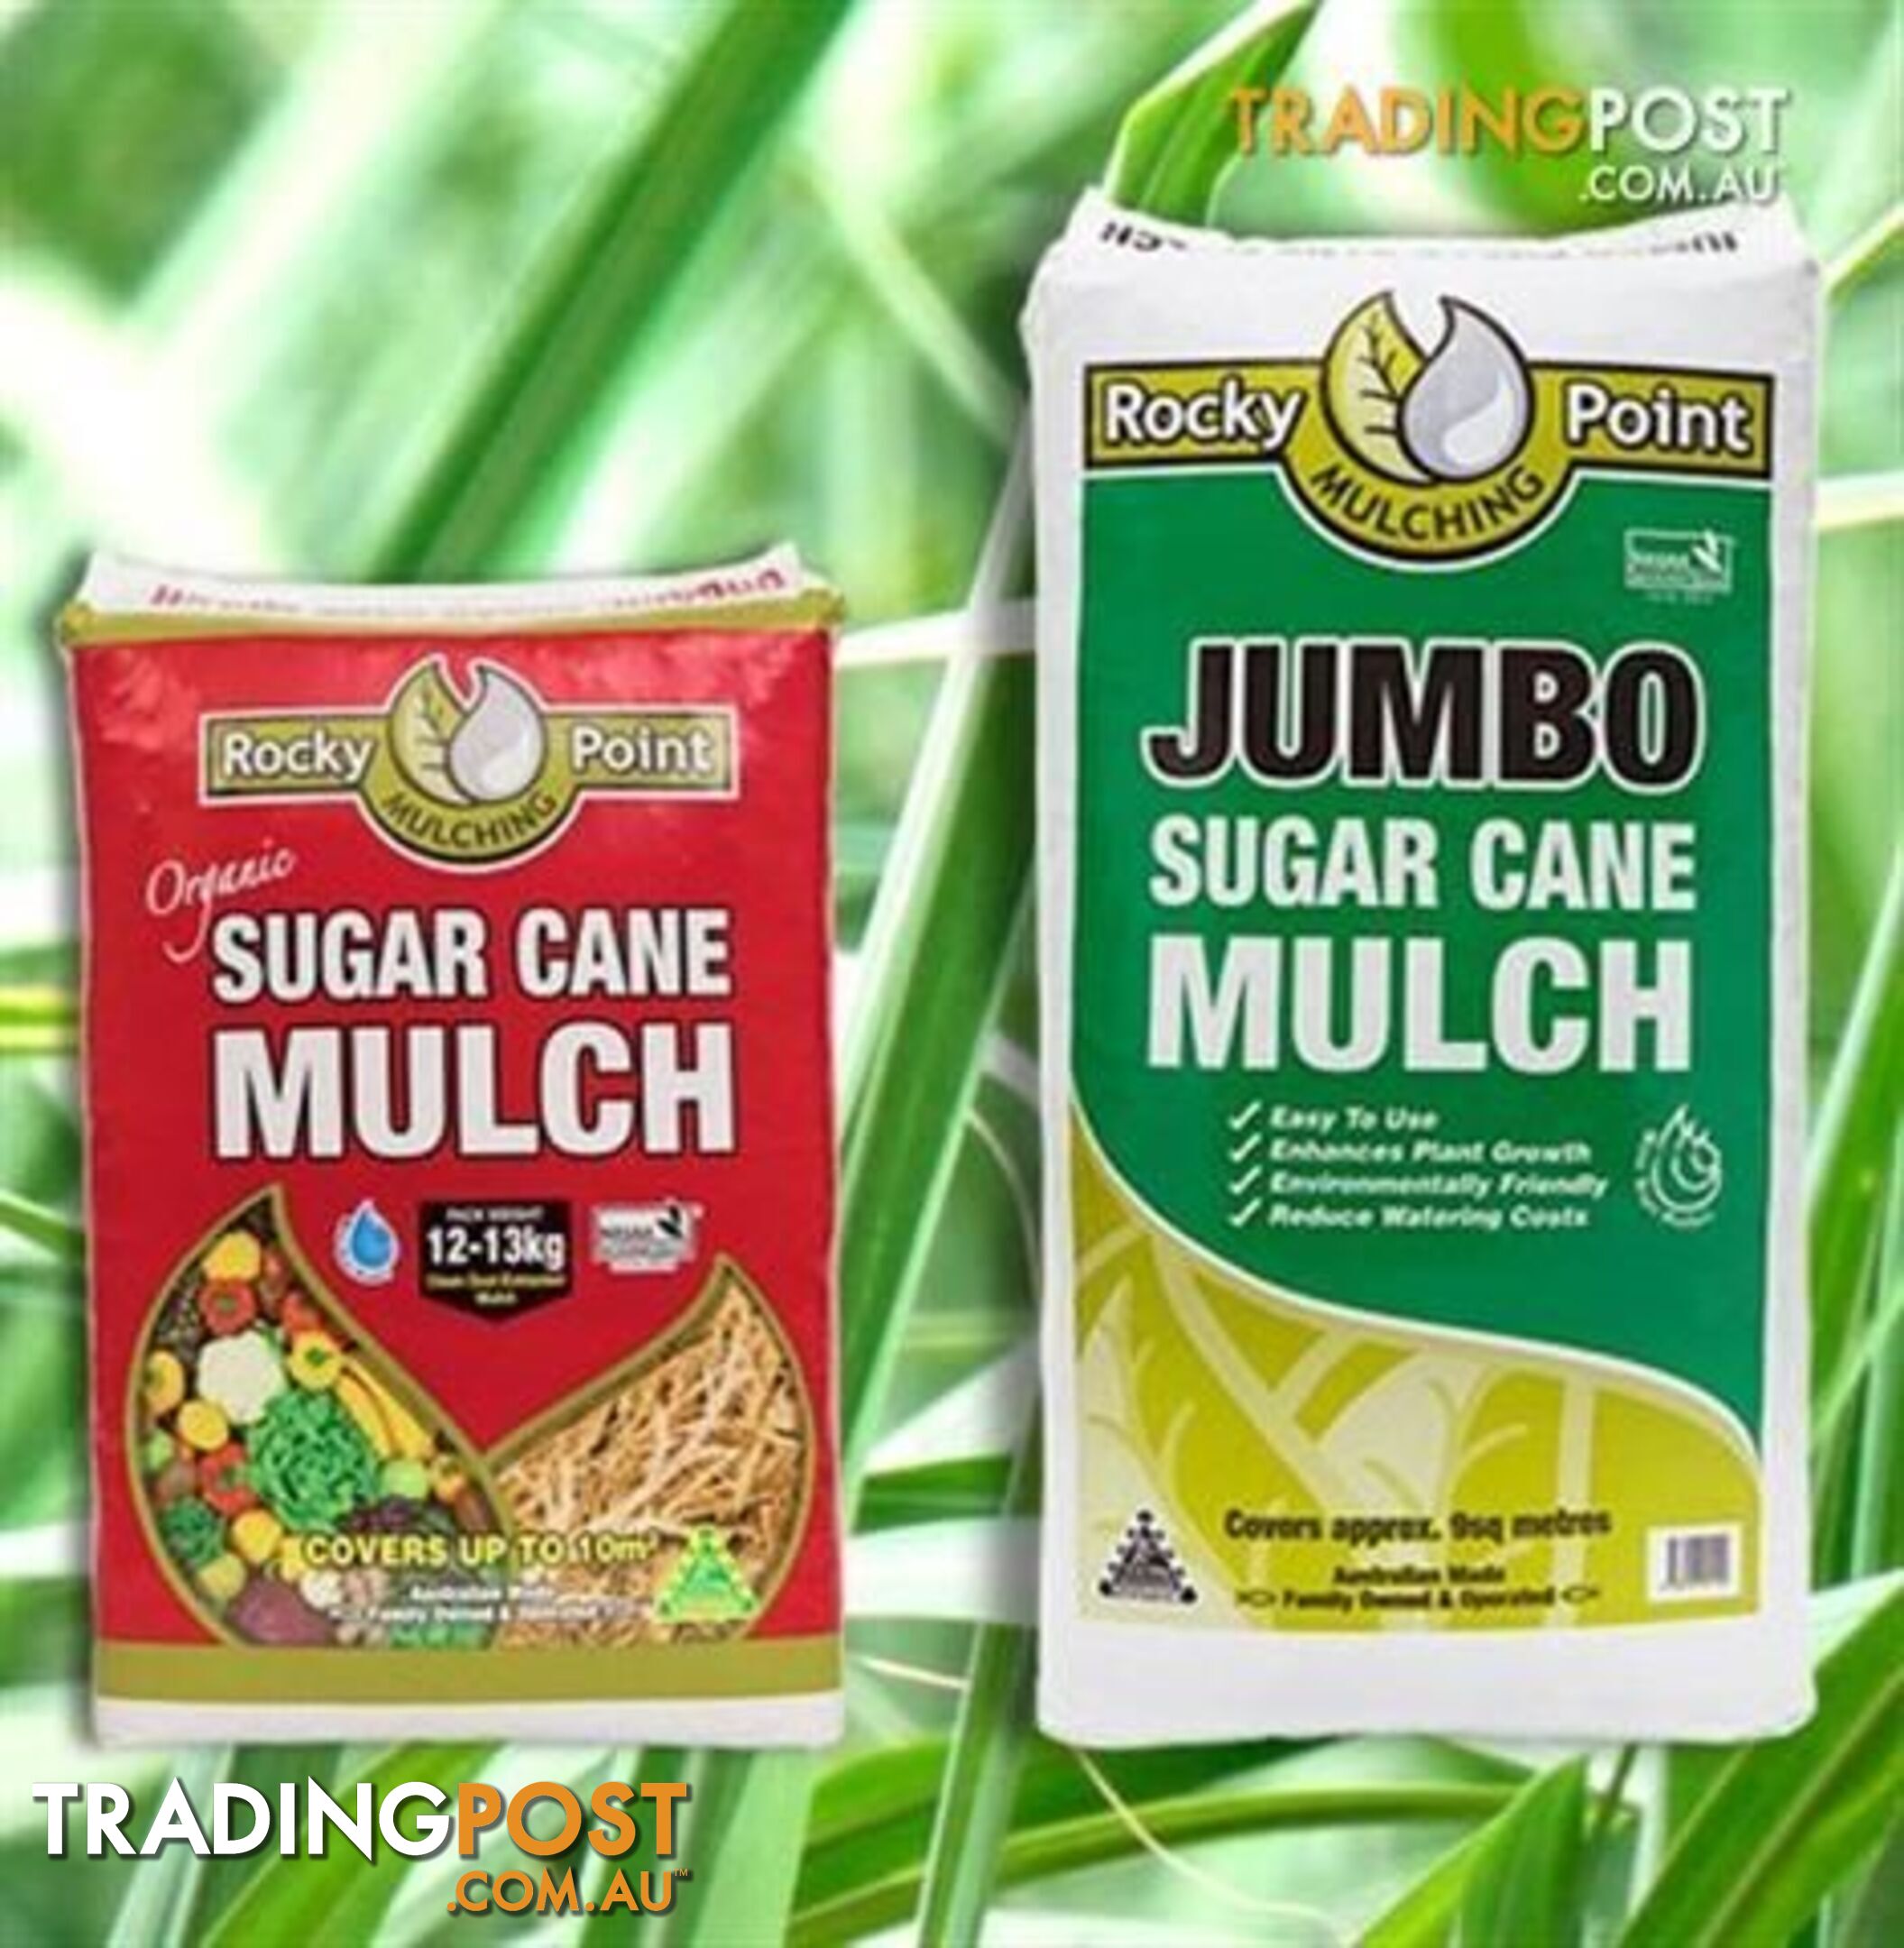 Organic Sugar Cane Mulch - StockCode: CKJGHY